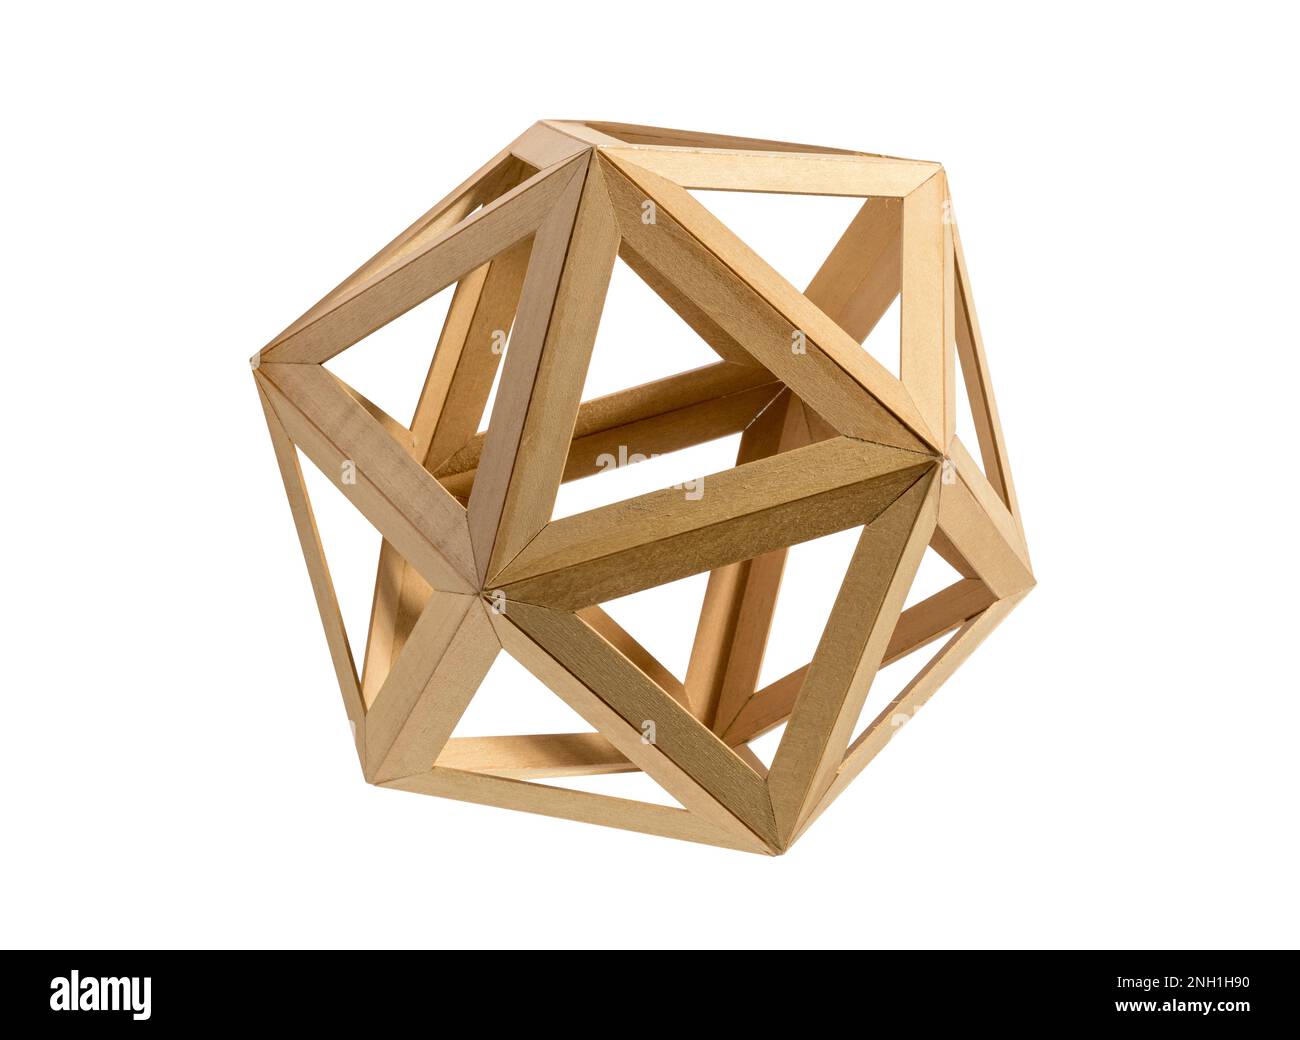 Icosaedro en forma geométrica hecho de madera clara con triángulos aislados sobre fondo blanco Foto de stock